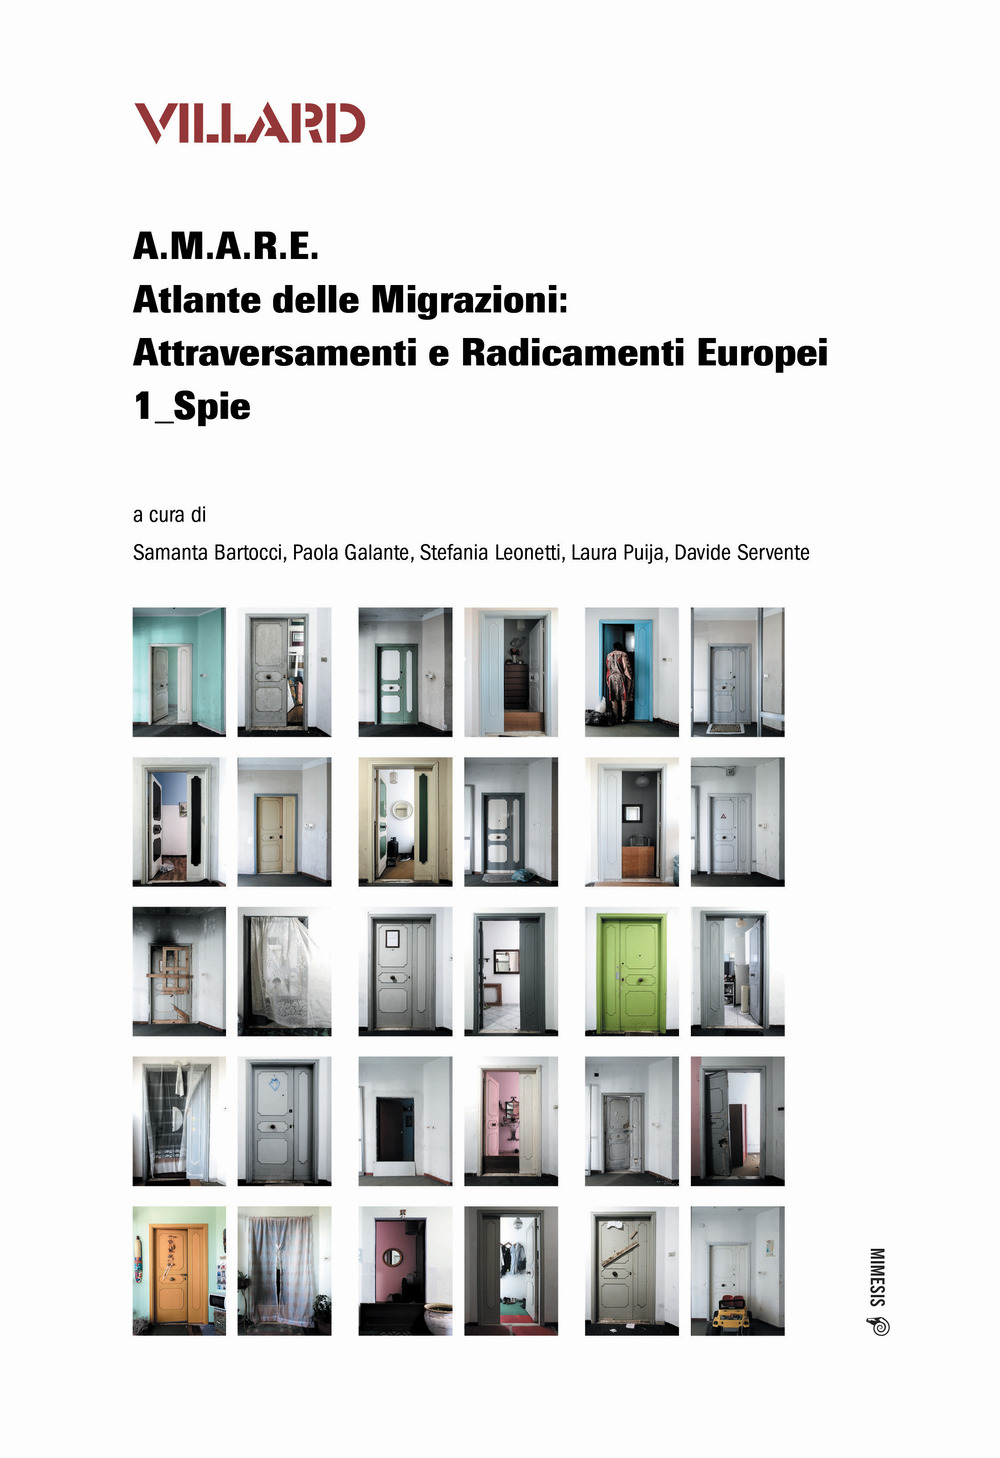 Villard. A.M.A.R.E. Atlante delle Migrazioni: Attraversamenti e Radicamenti Europei. Vol. 1: Spie